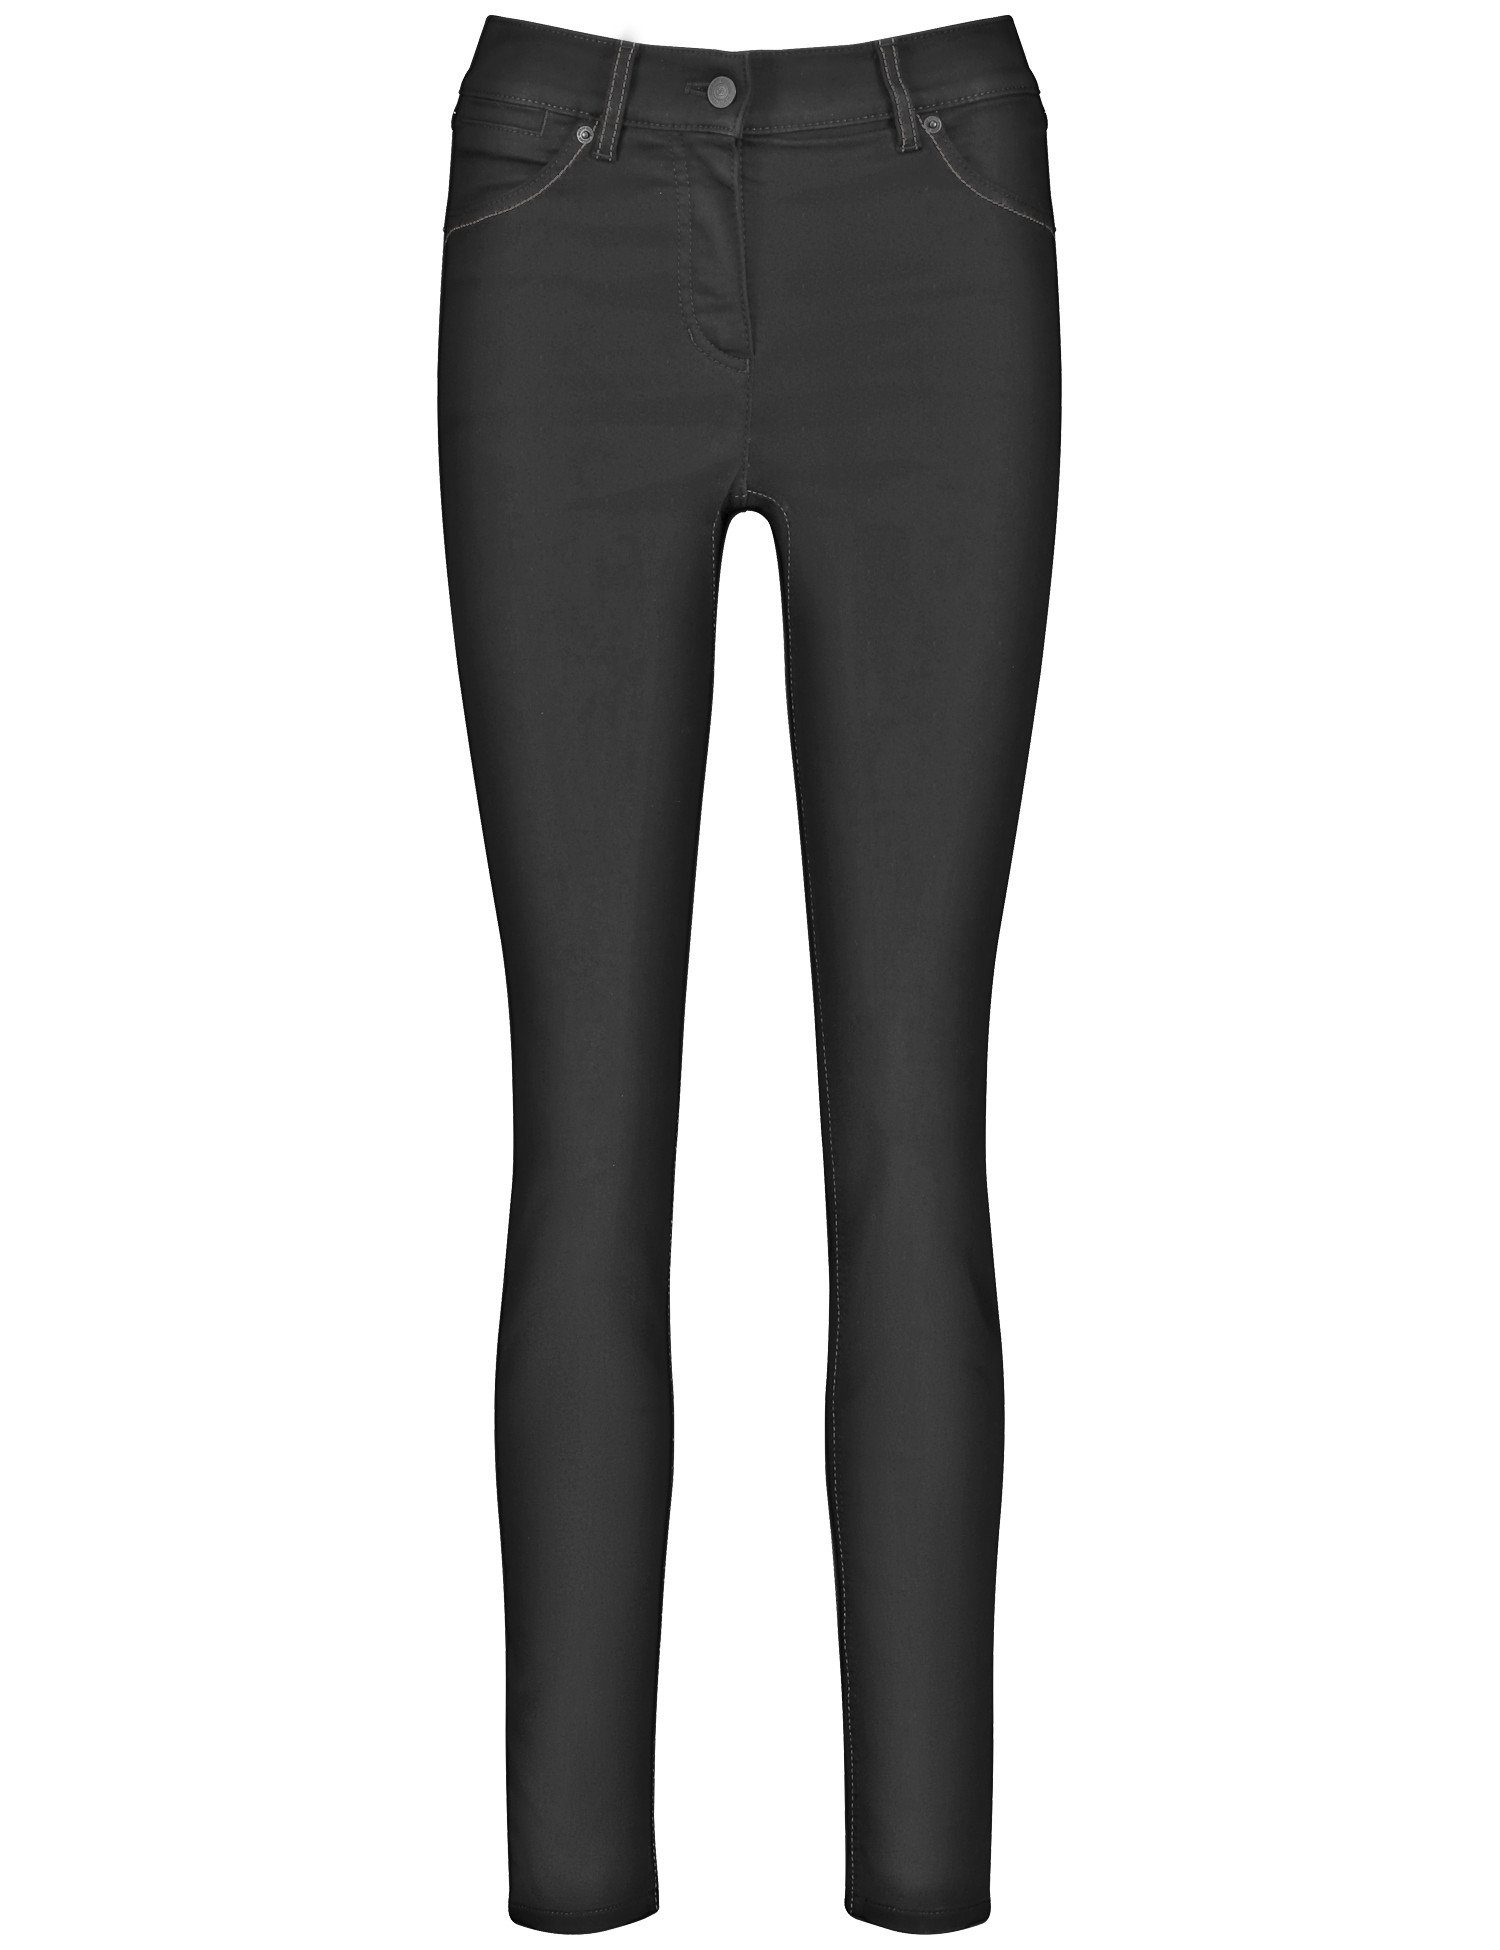 GERRY WEBER Stretch-Jeans Jeans Black 5-Pocket Black Best4me Skinny Denim